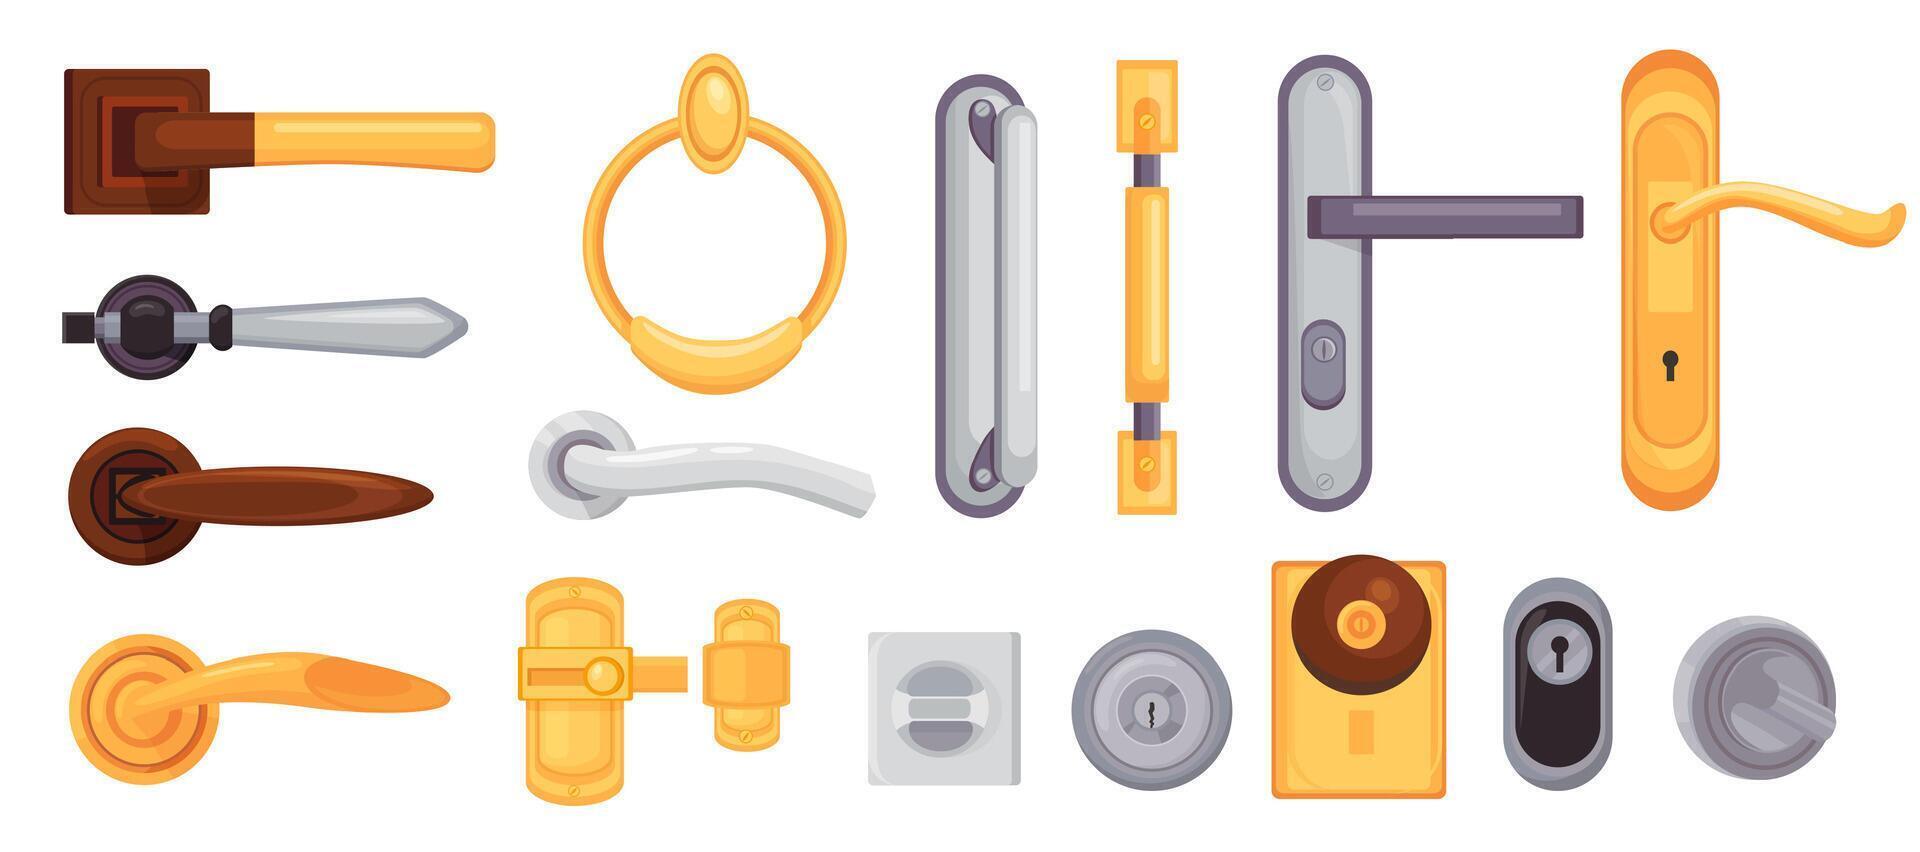 Door handle and knob. Cartoon modern metal and golden locks, latches, doorknobs and handles. House interior doors element icons vector set